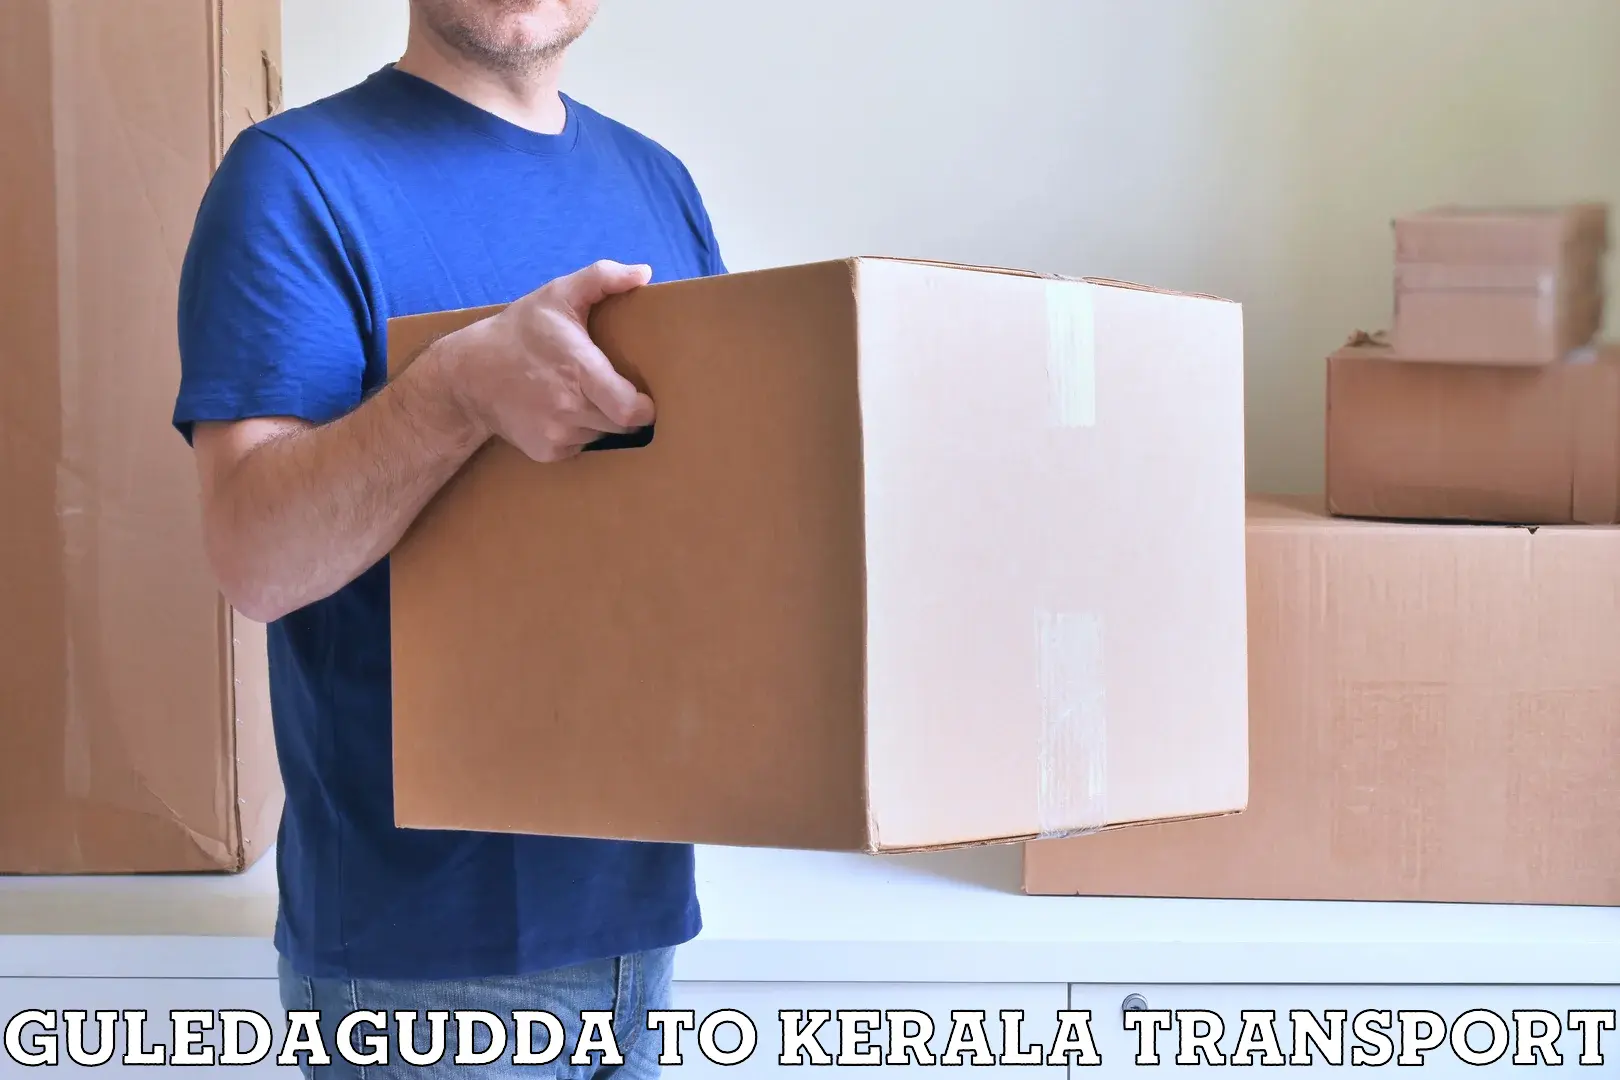 Nearest transport service in Guledagudda to Trivandrum